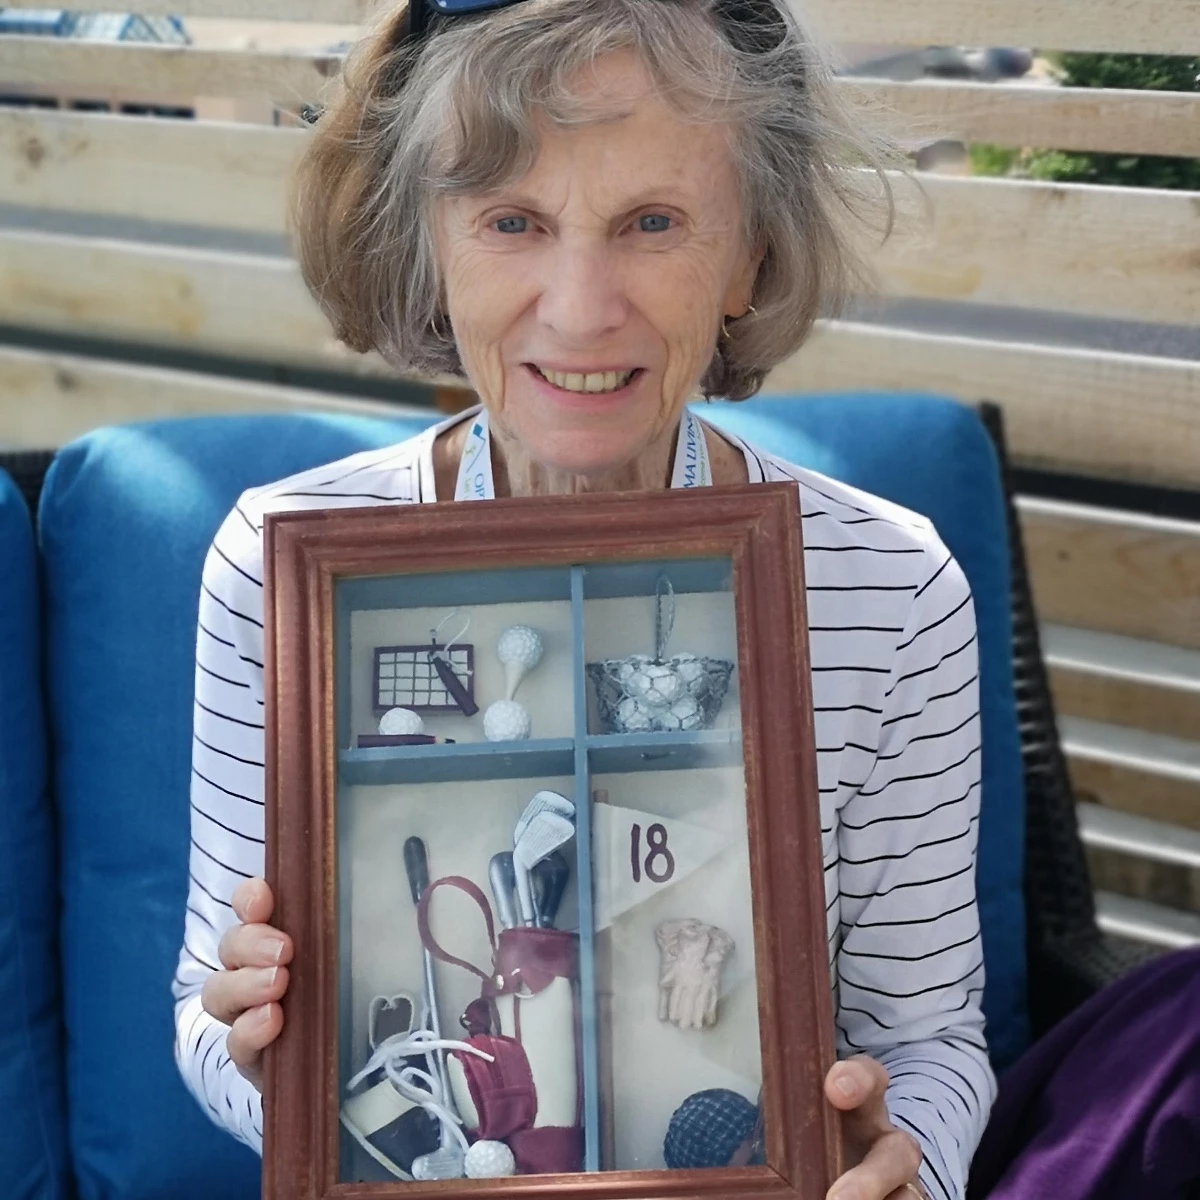 An elderly woman holding an antique frame